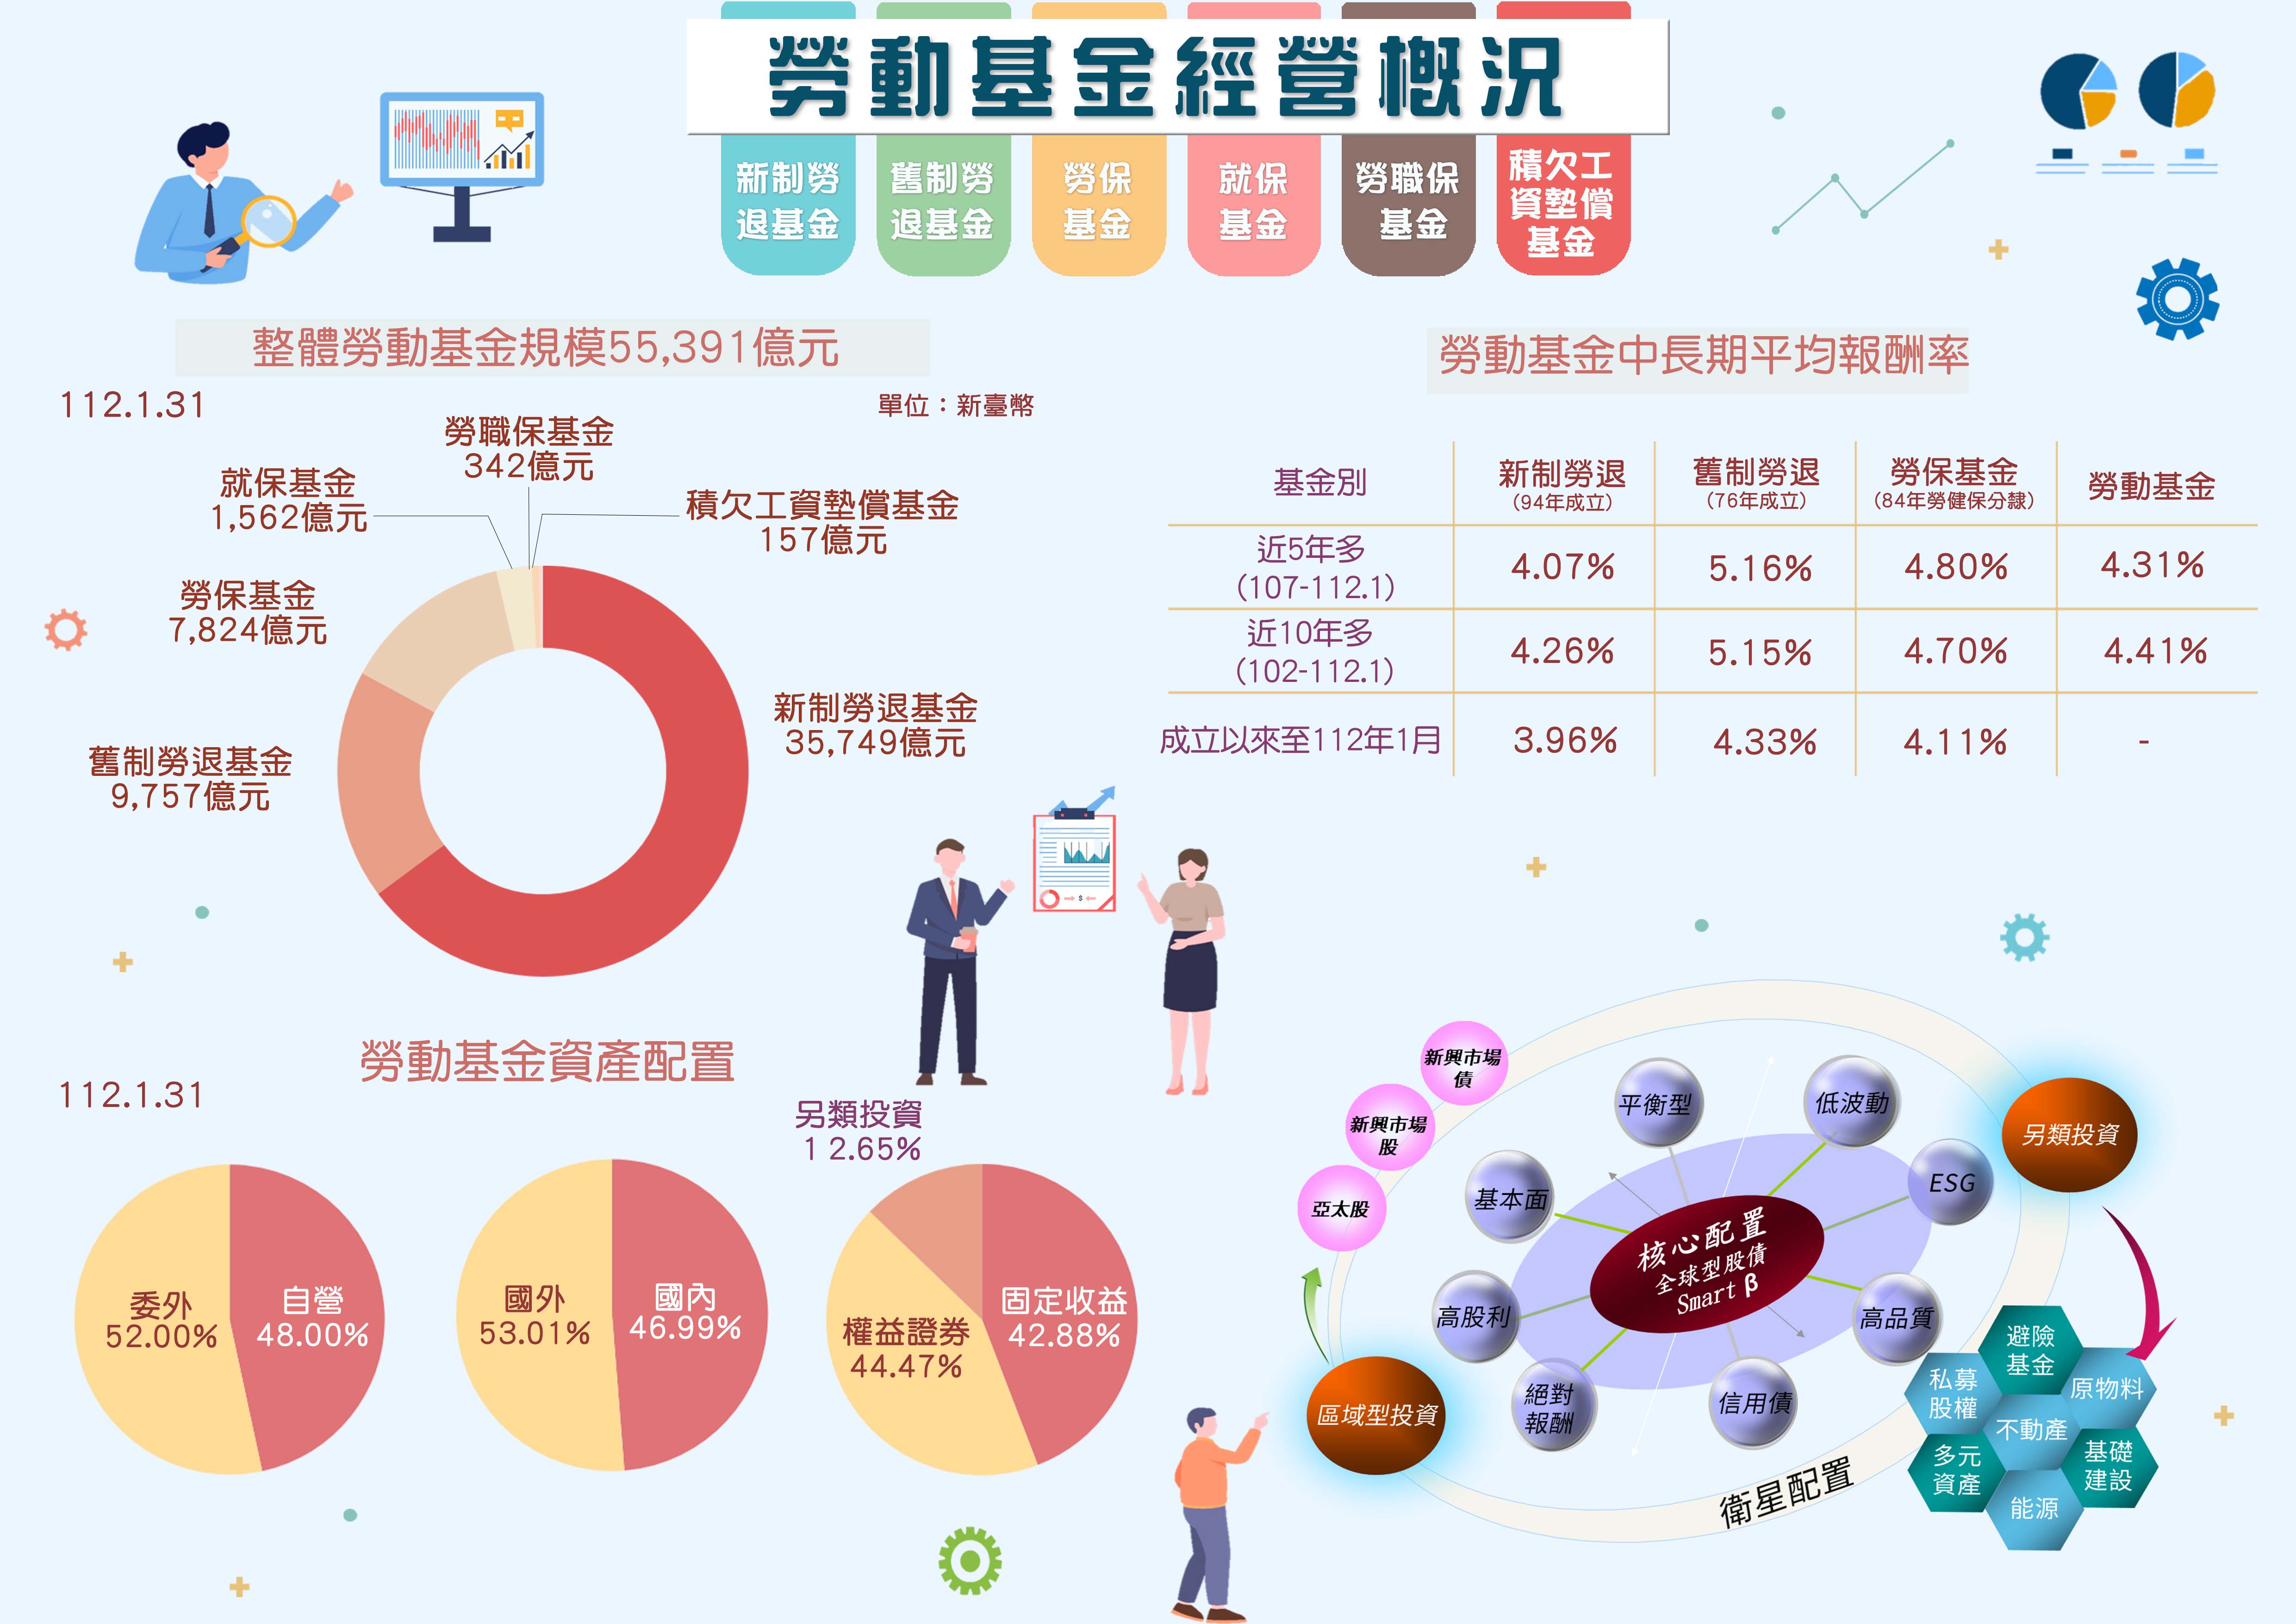 Infographic(11201)中文